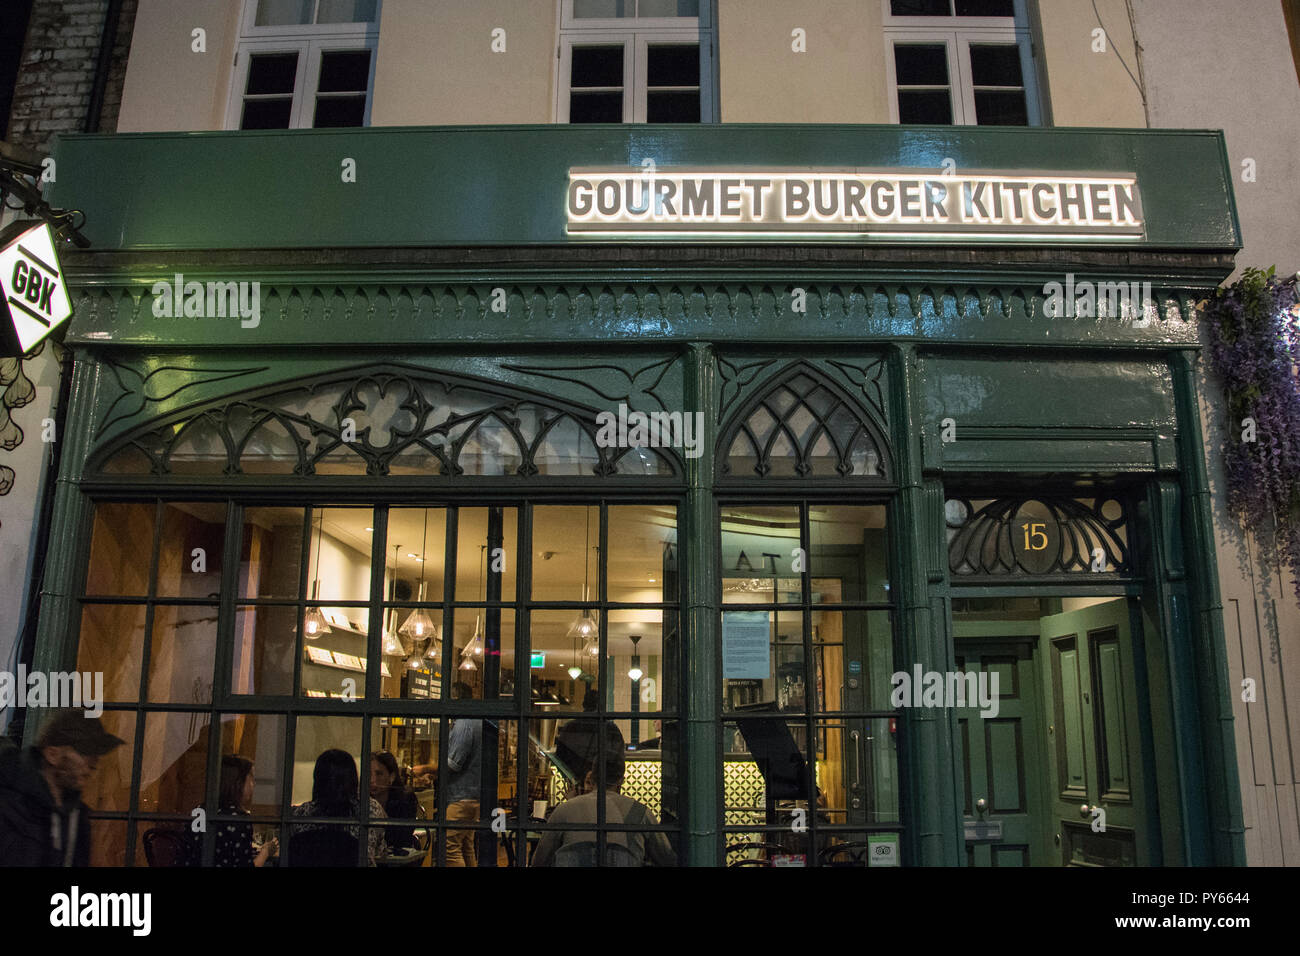 Burger Gourmet en lutte (GBK) sortie de chaîne à Soho, Londres, UK Banque D'Images